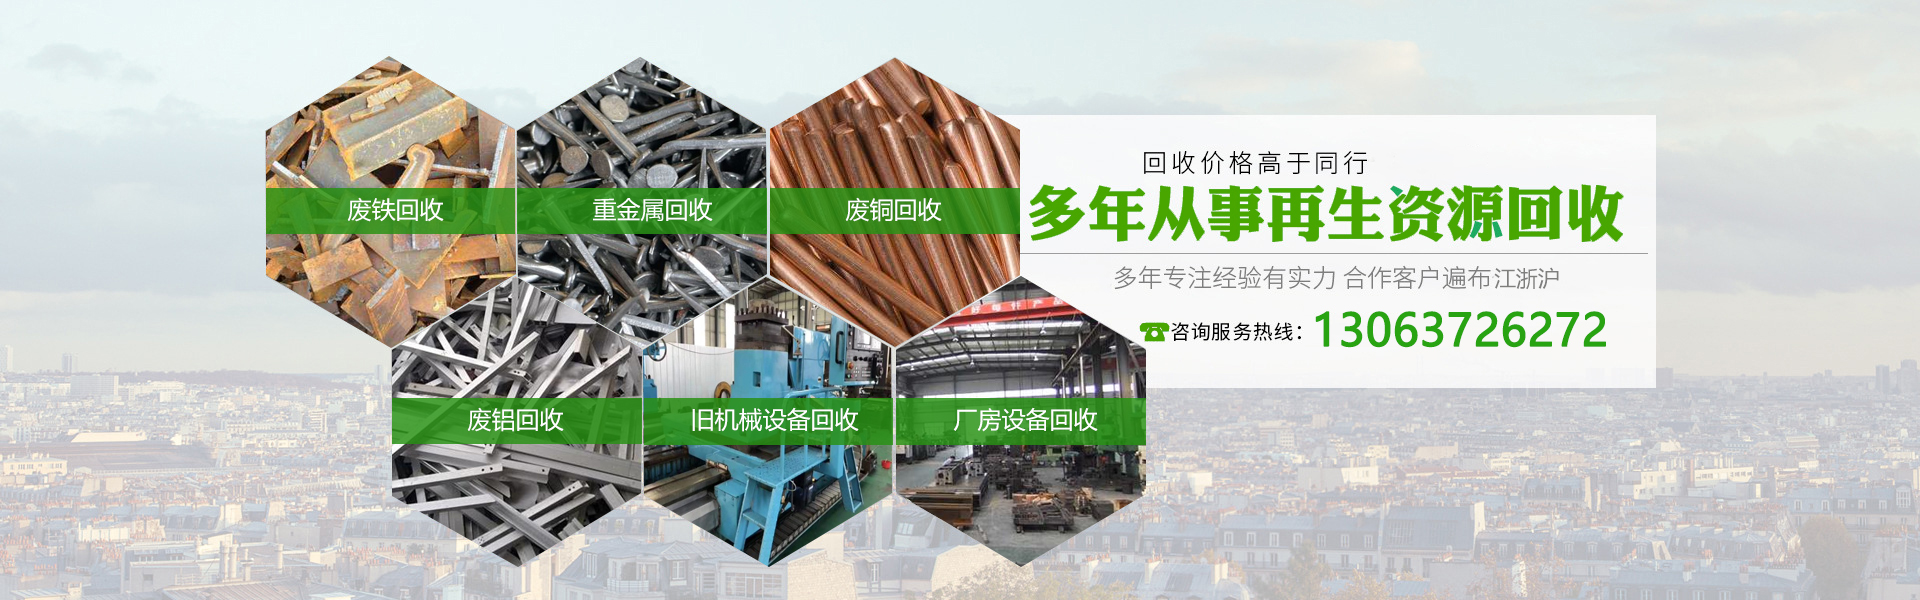 南京廢鐵回收